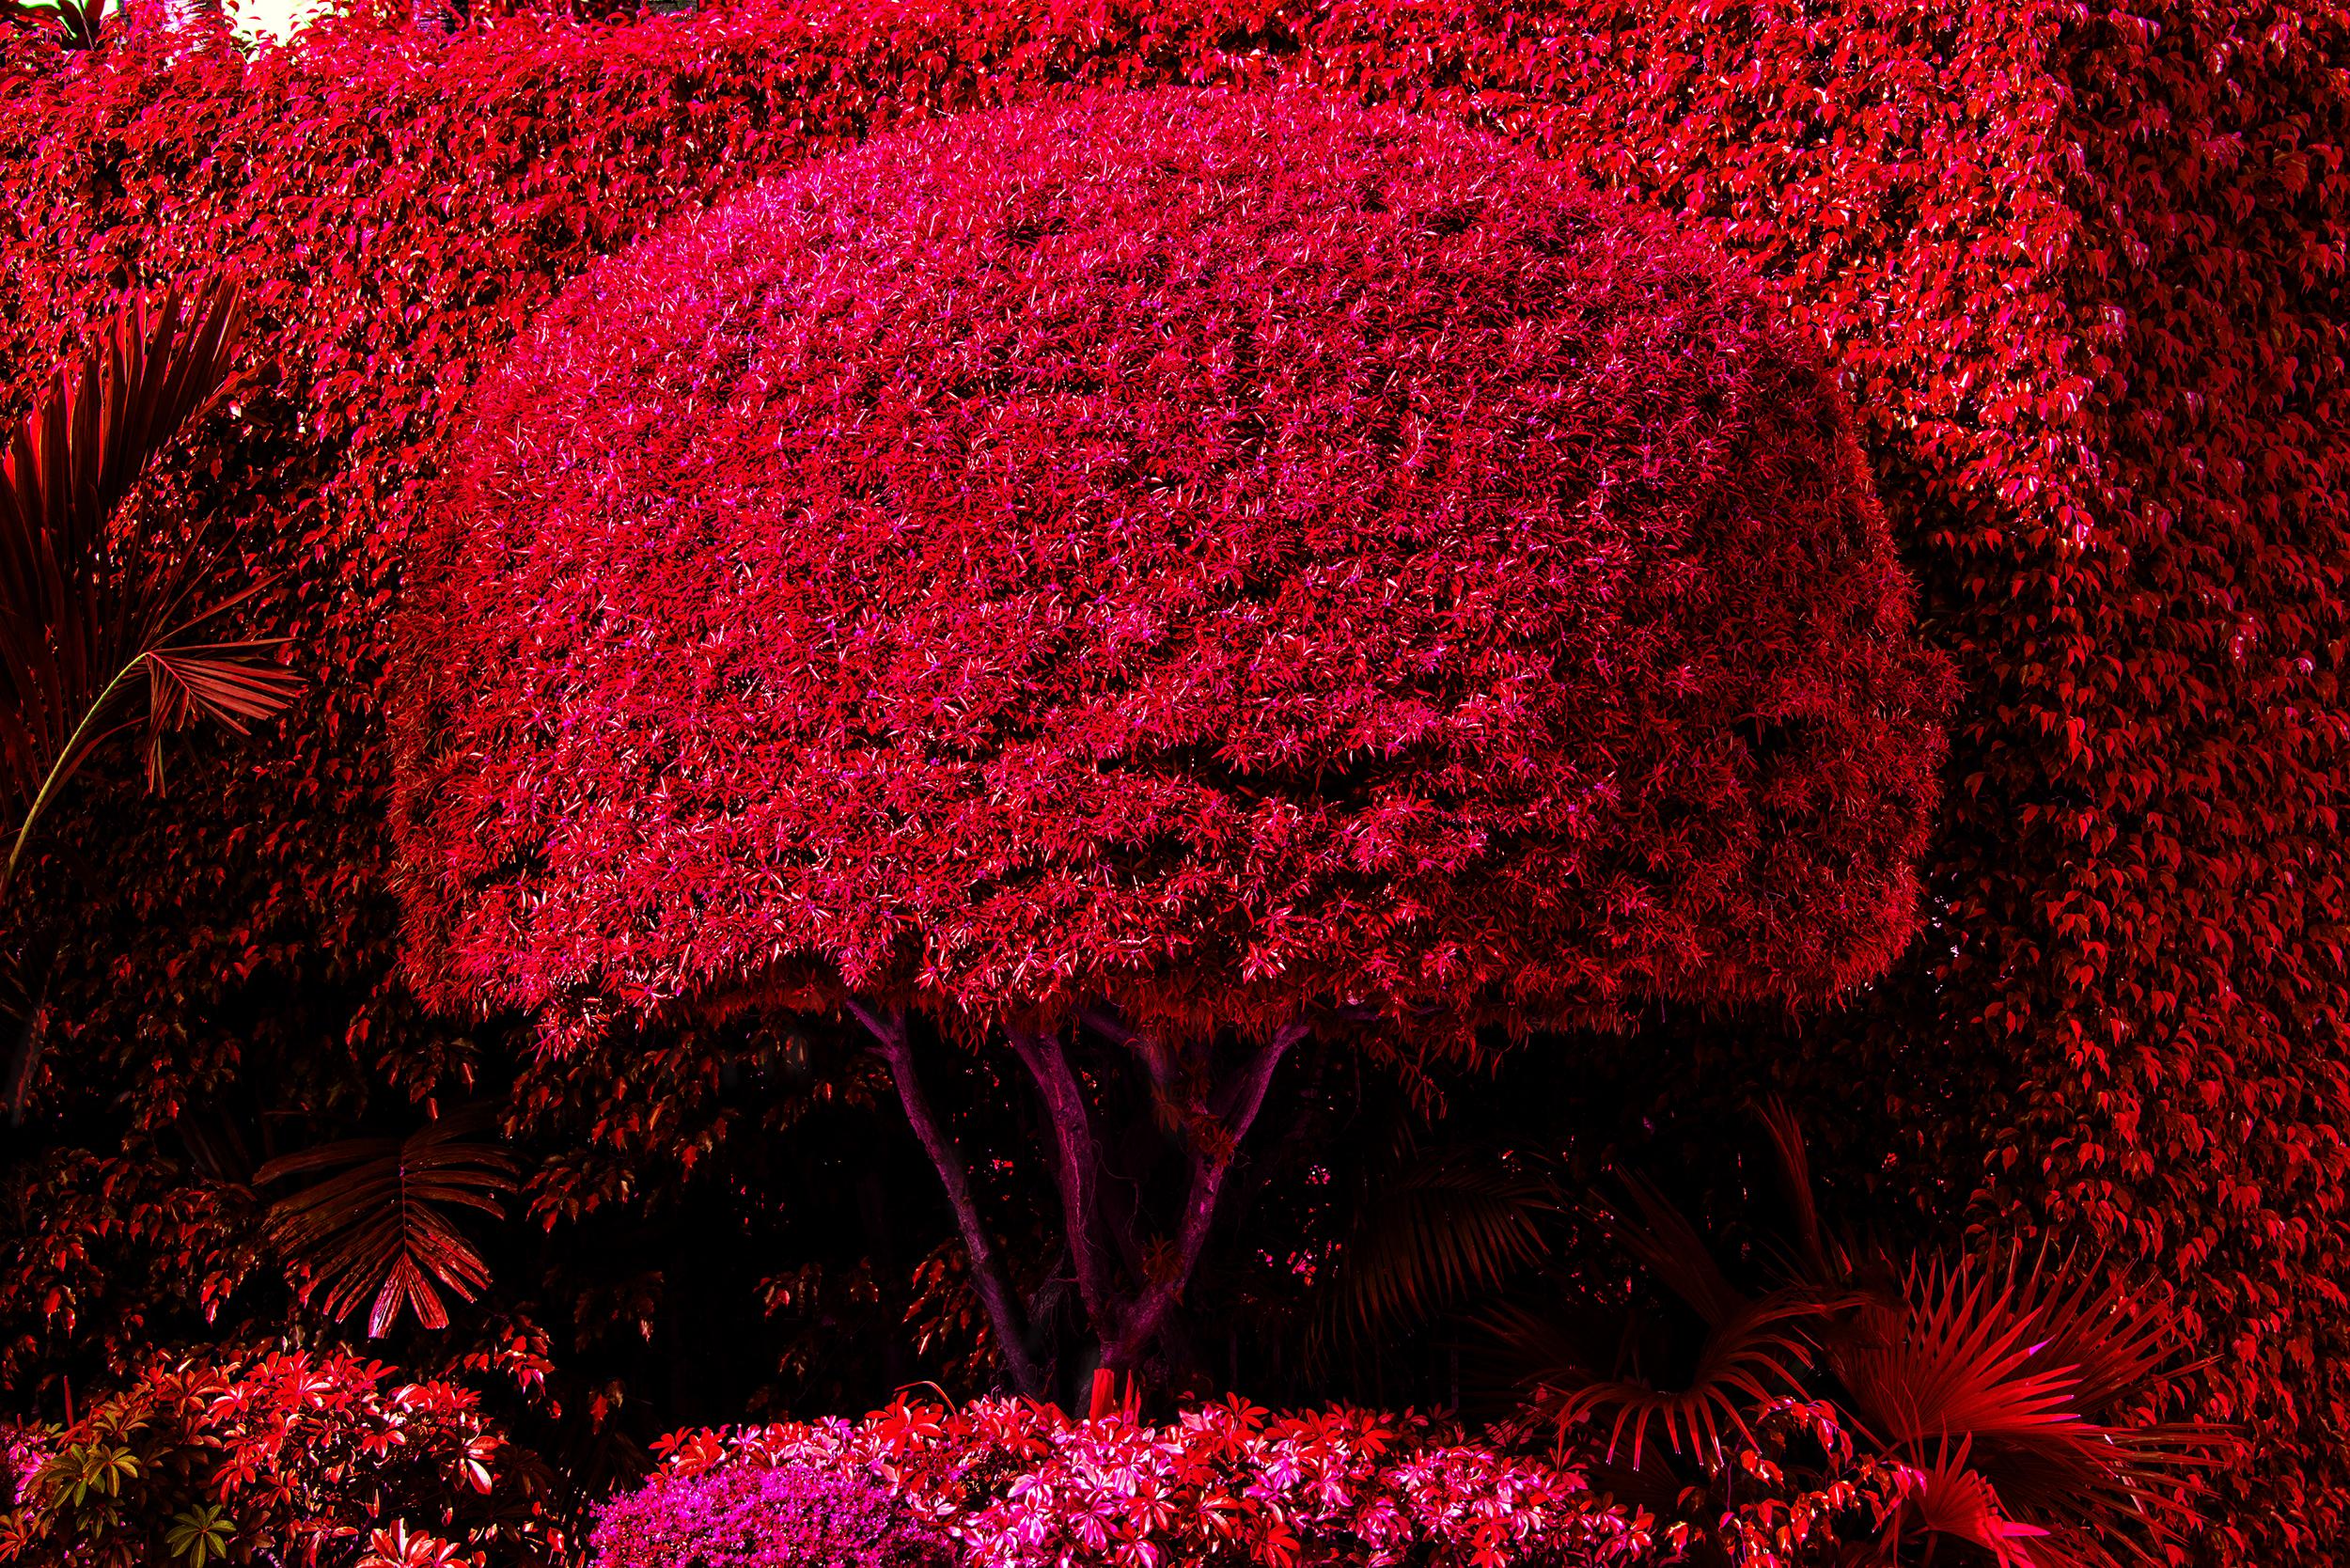 Robert Funk Landscape Photograph – Hedge Fun - Hibiscus Island - Miami Beach - Straßenkunst von den Wohlhabenden. Rot